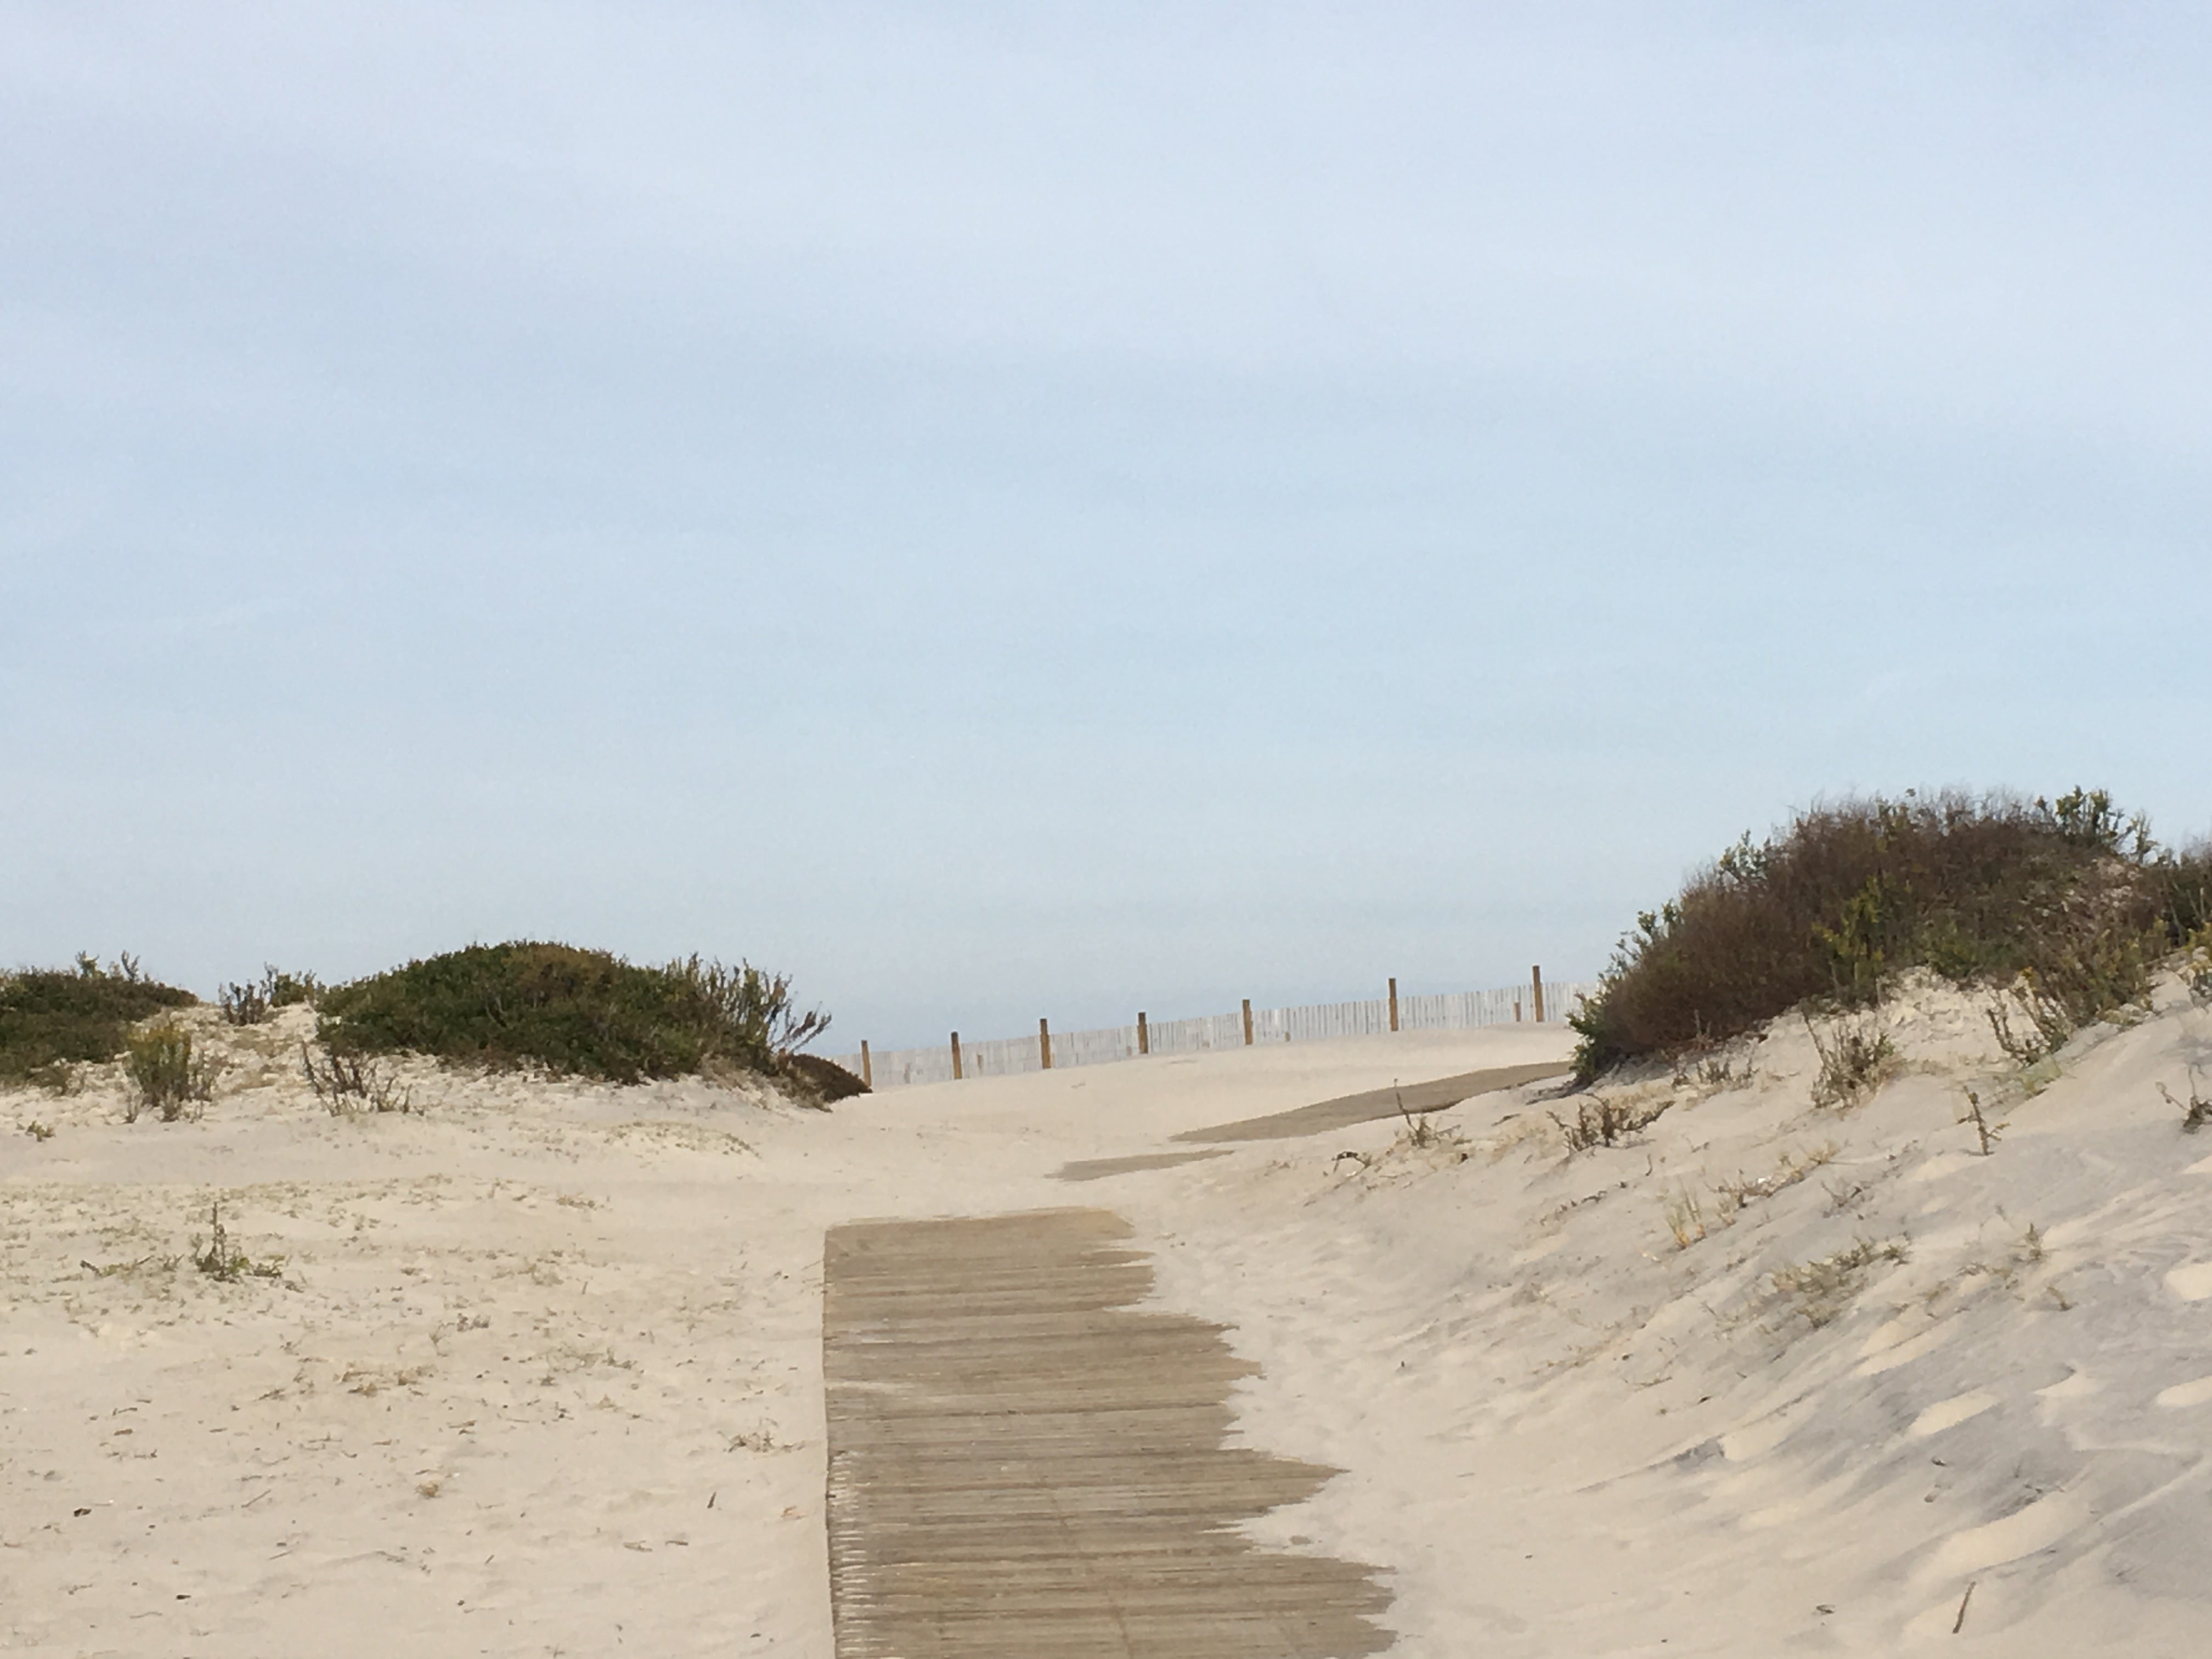 Boardwalk over the dunes